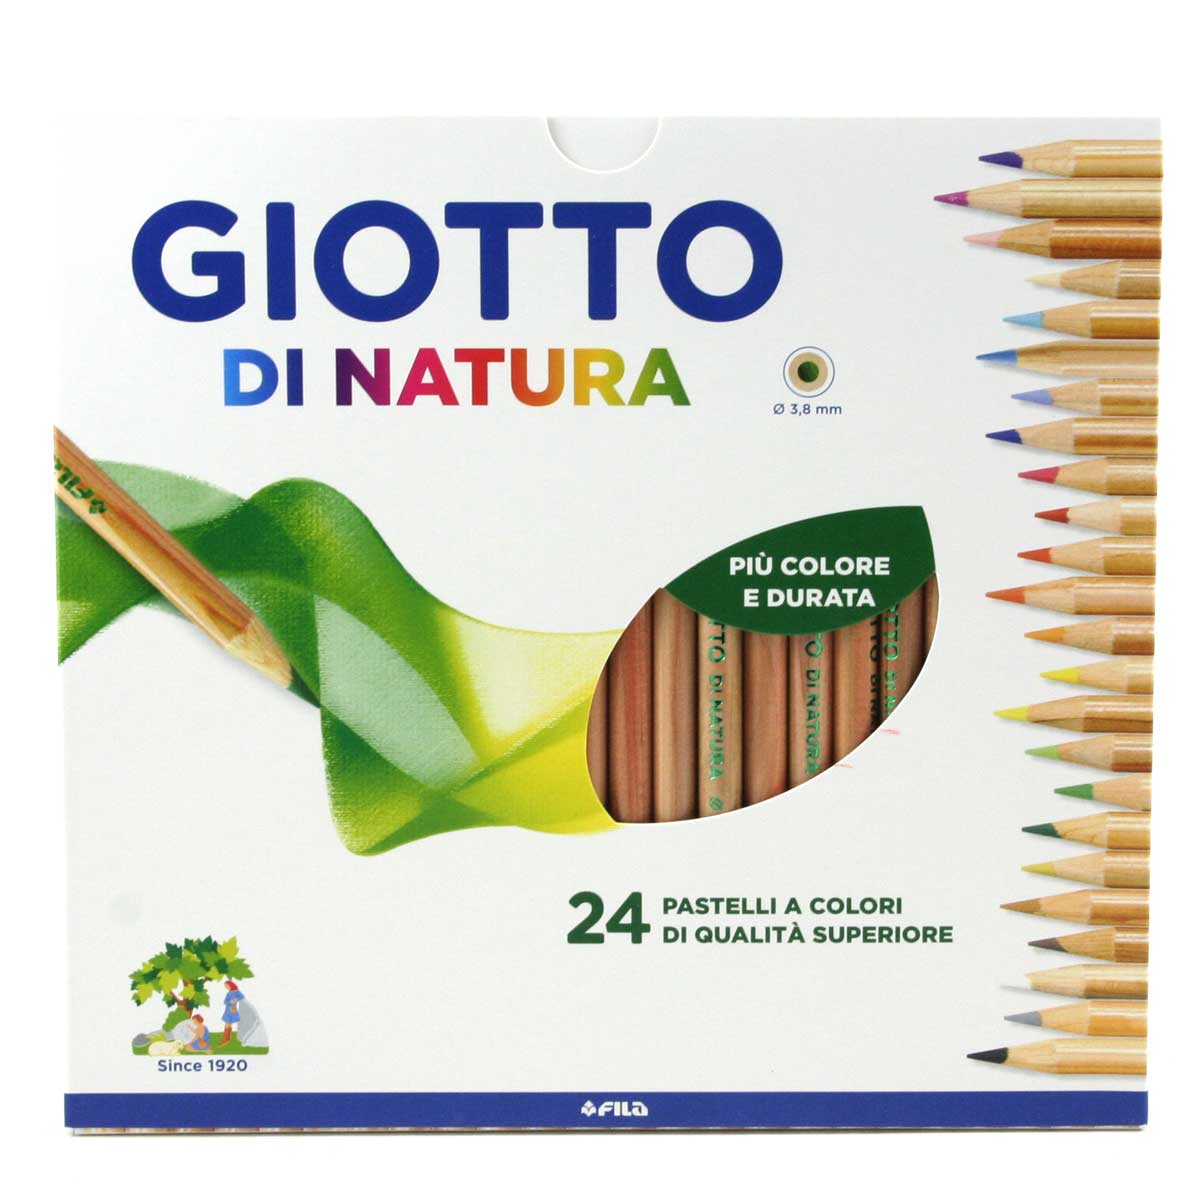 Giotto di Natura Pastelli colorati - mina 3.8mm - legno di cedro - Astuccio  24 colori